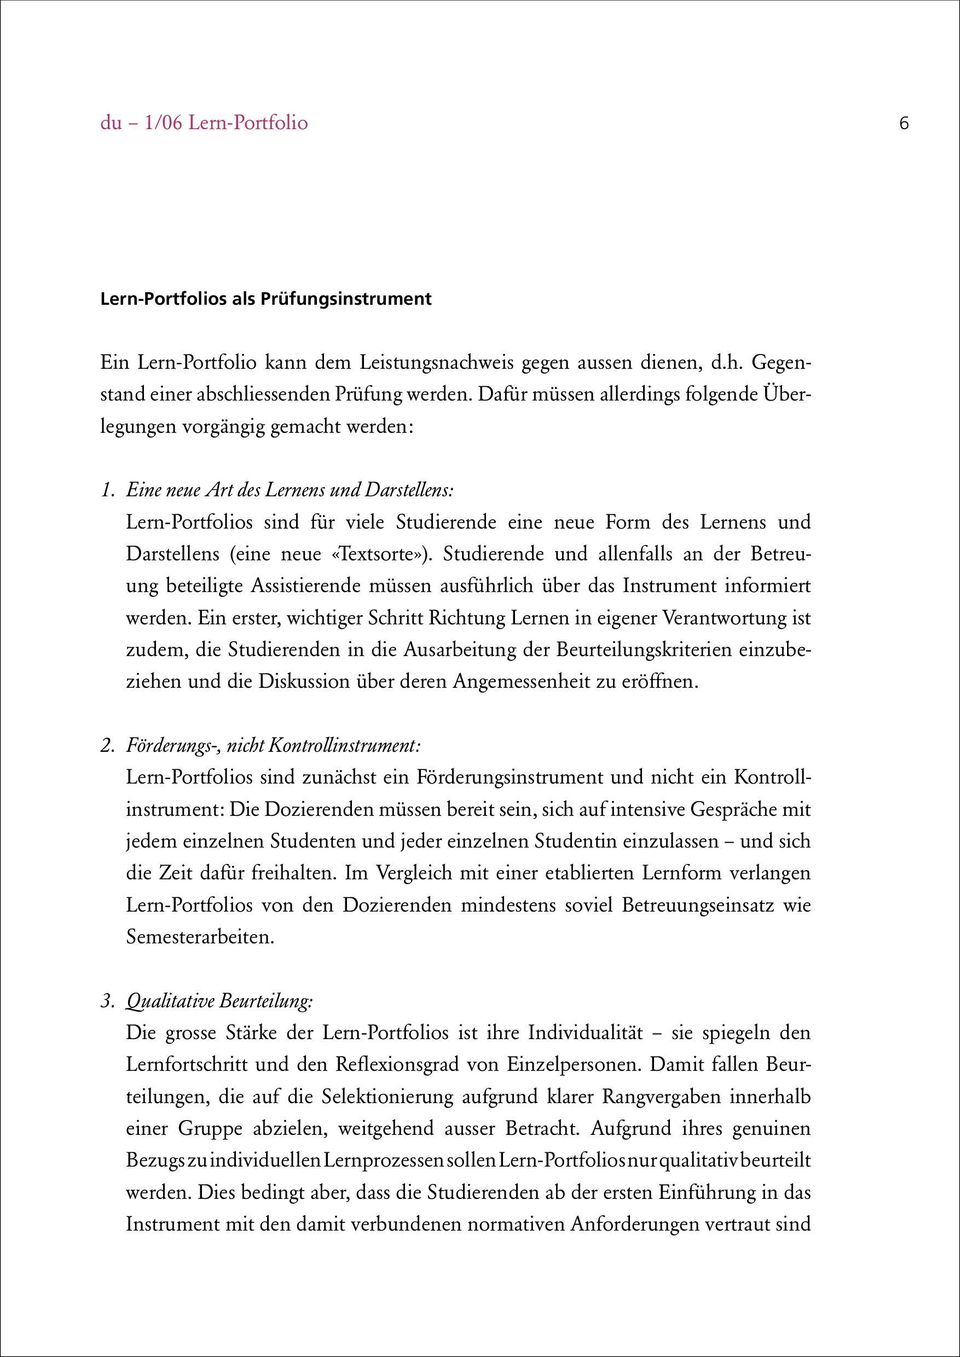 Lern Portfolio Dossier Unididaktik 1 06 Universitat Zurich Arbeitsstelle Fur Hochschuldidaktik Afh Inhalt Pdf Free Download